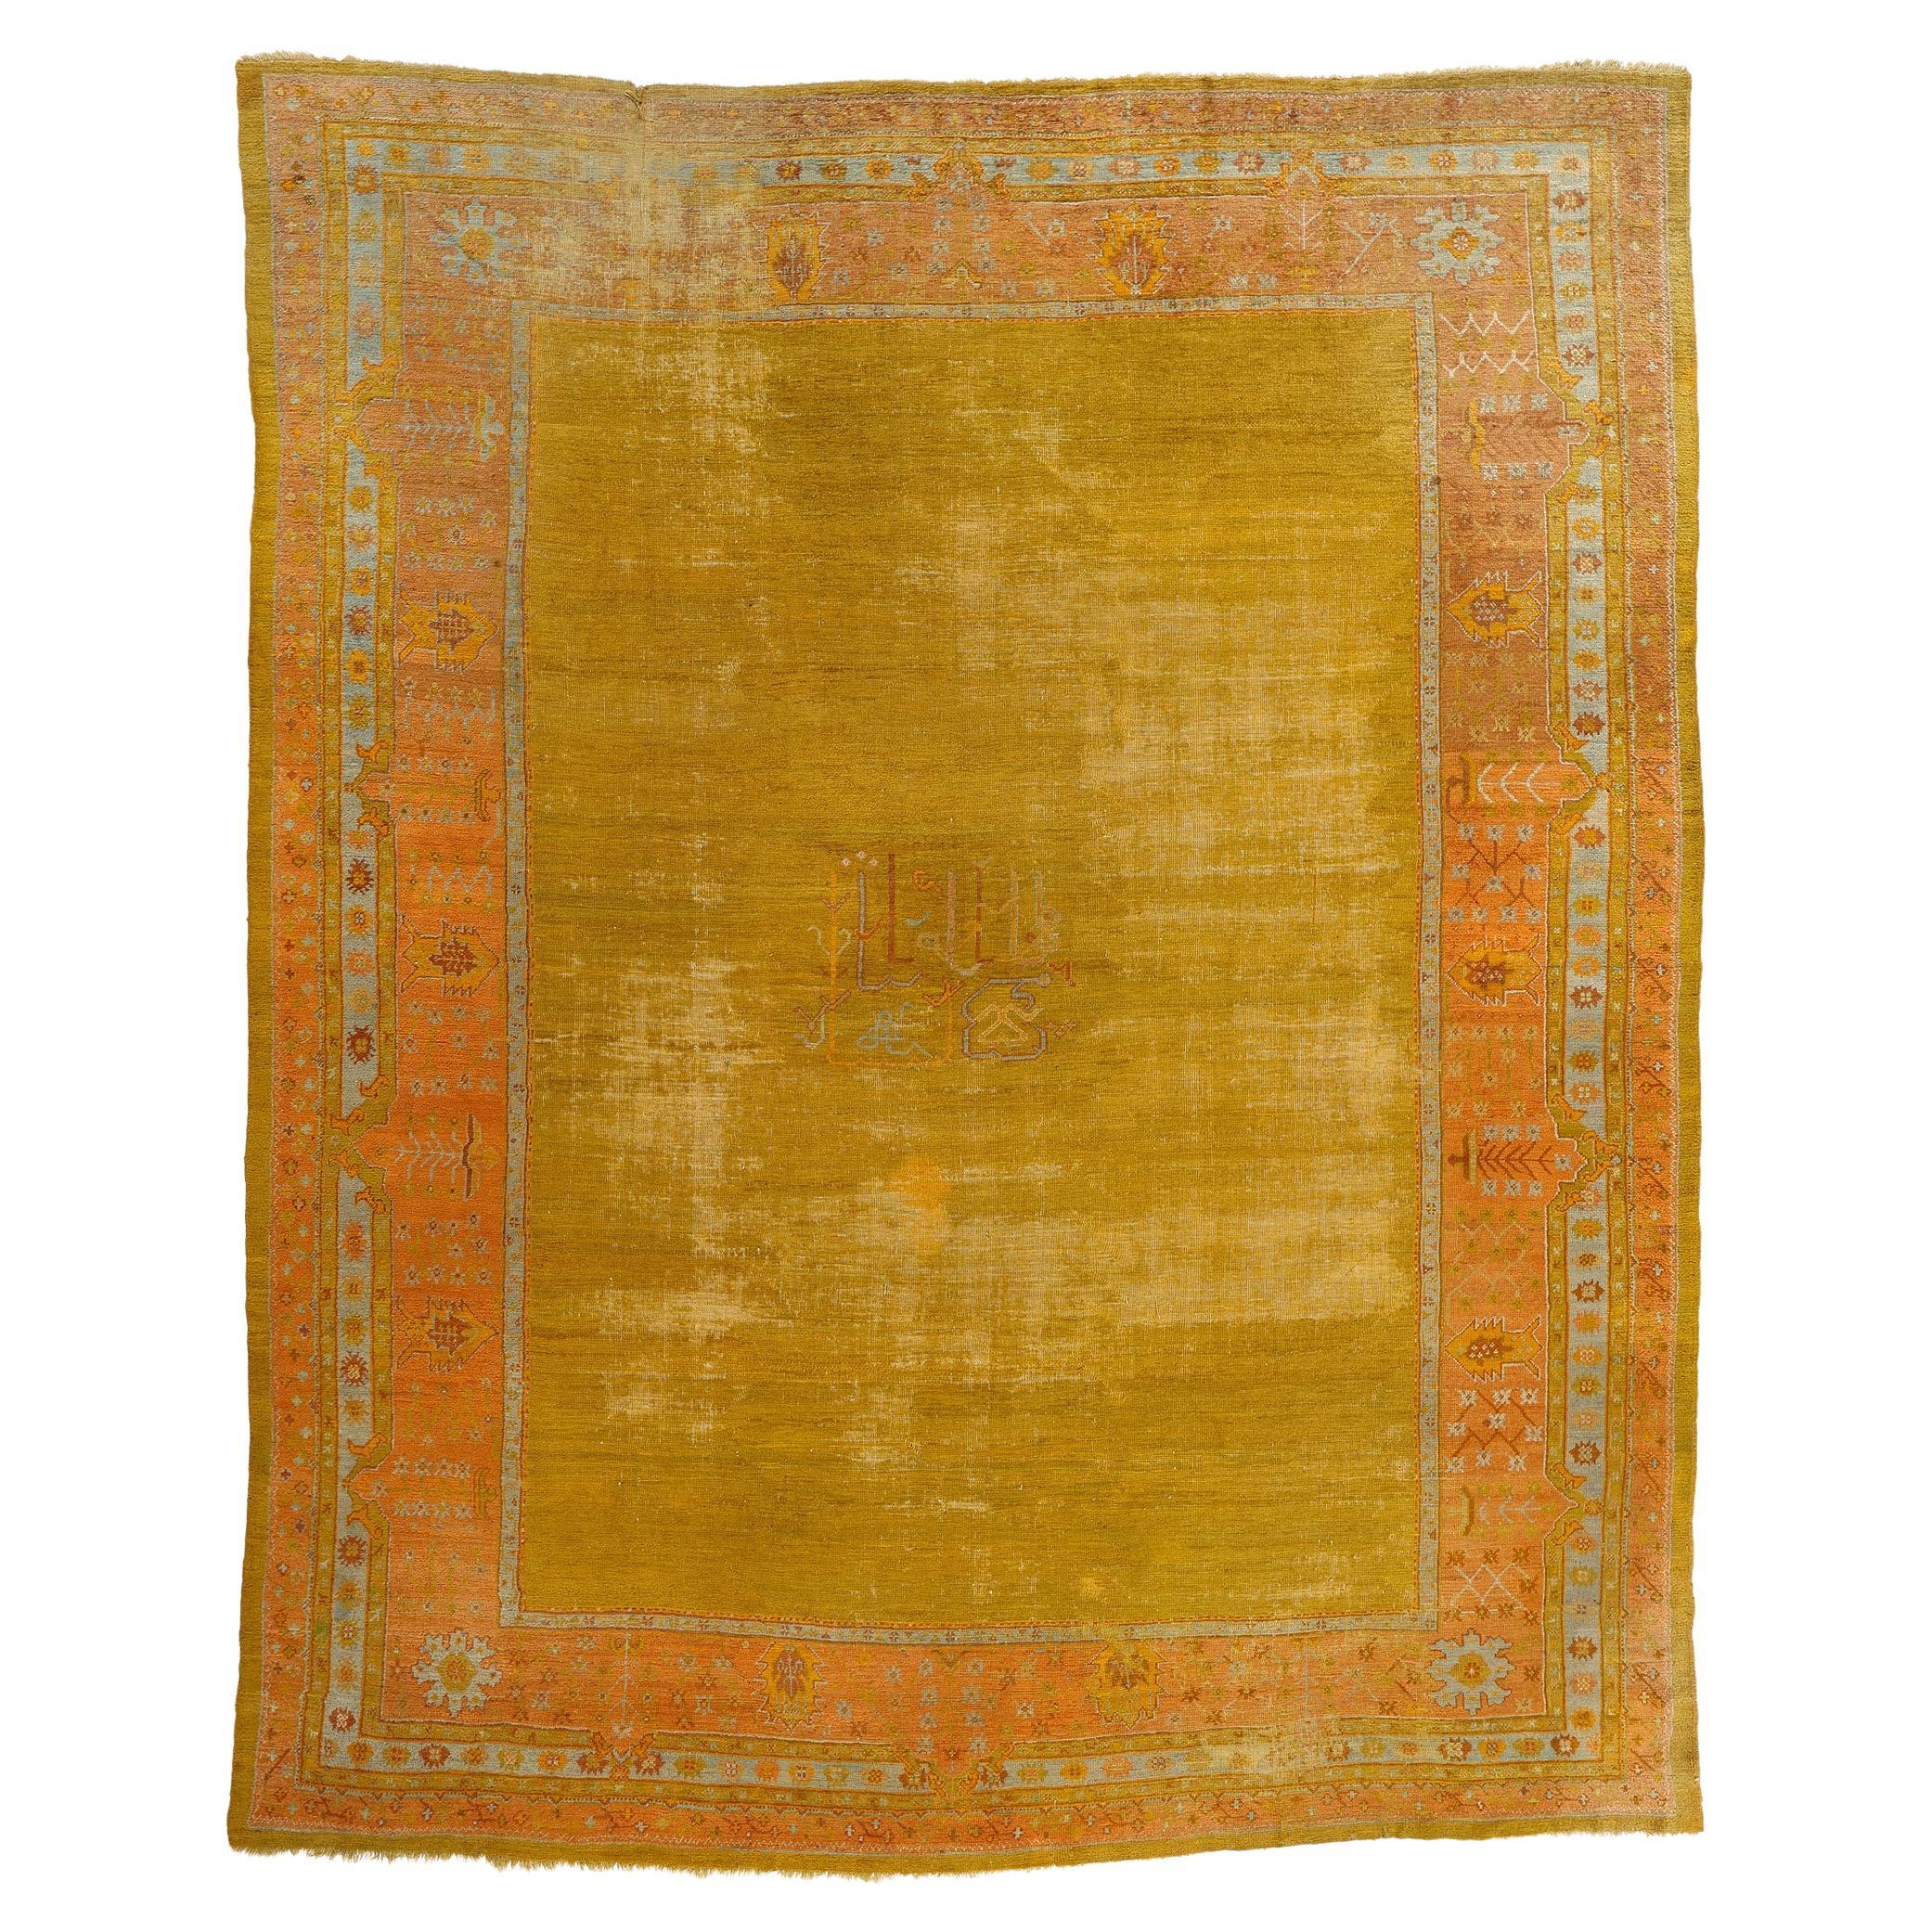 Fin du 19e siècle, tapis turc Oushak antique et doré